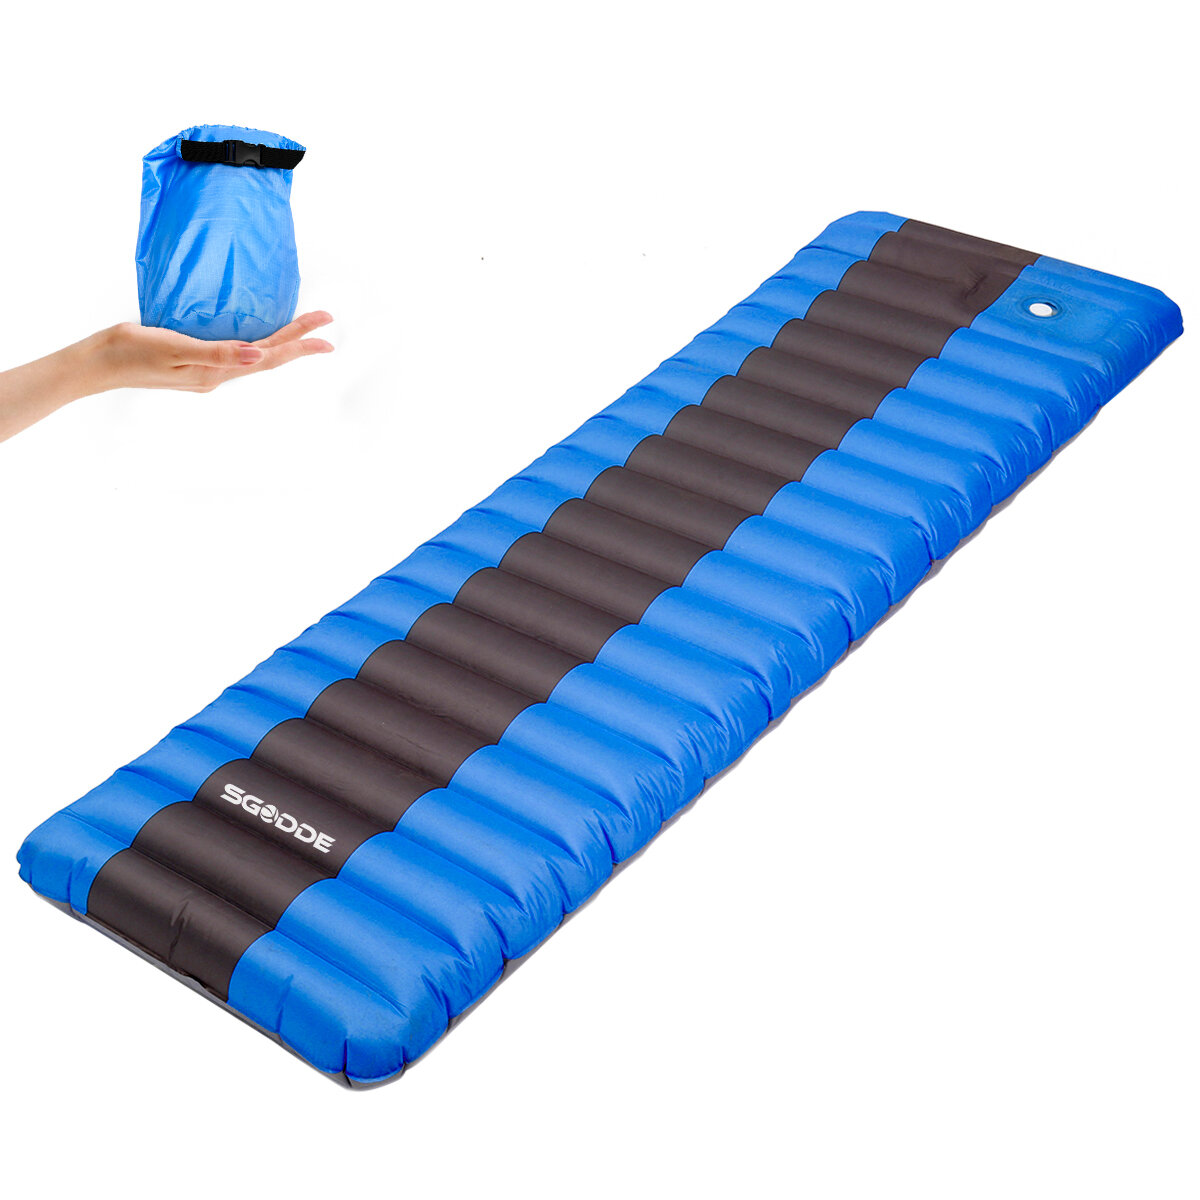 Esnek Sünger açık hava kampı şişirilebilir uyku minderi ultrahafif hava matları yürüyüş şişirilebilir yastık